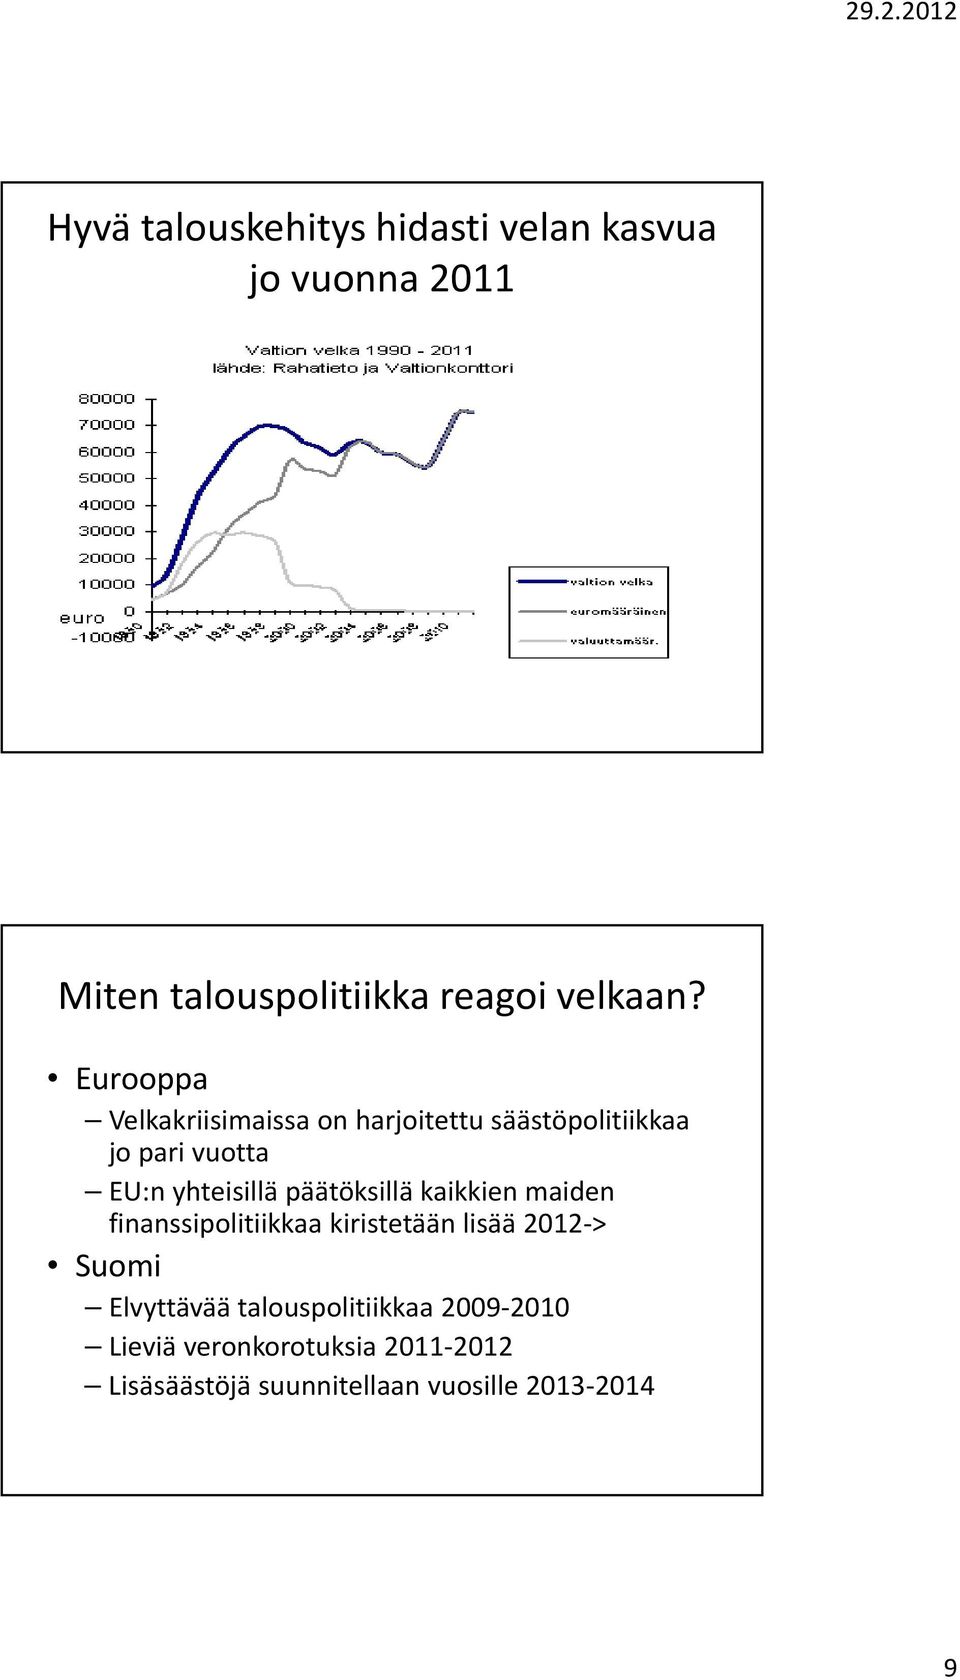 päätöksillä kaikkien maiden finanssipolitiikkaa kiristetään lisää 2012 > Suomi Elvyttävää